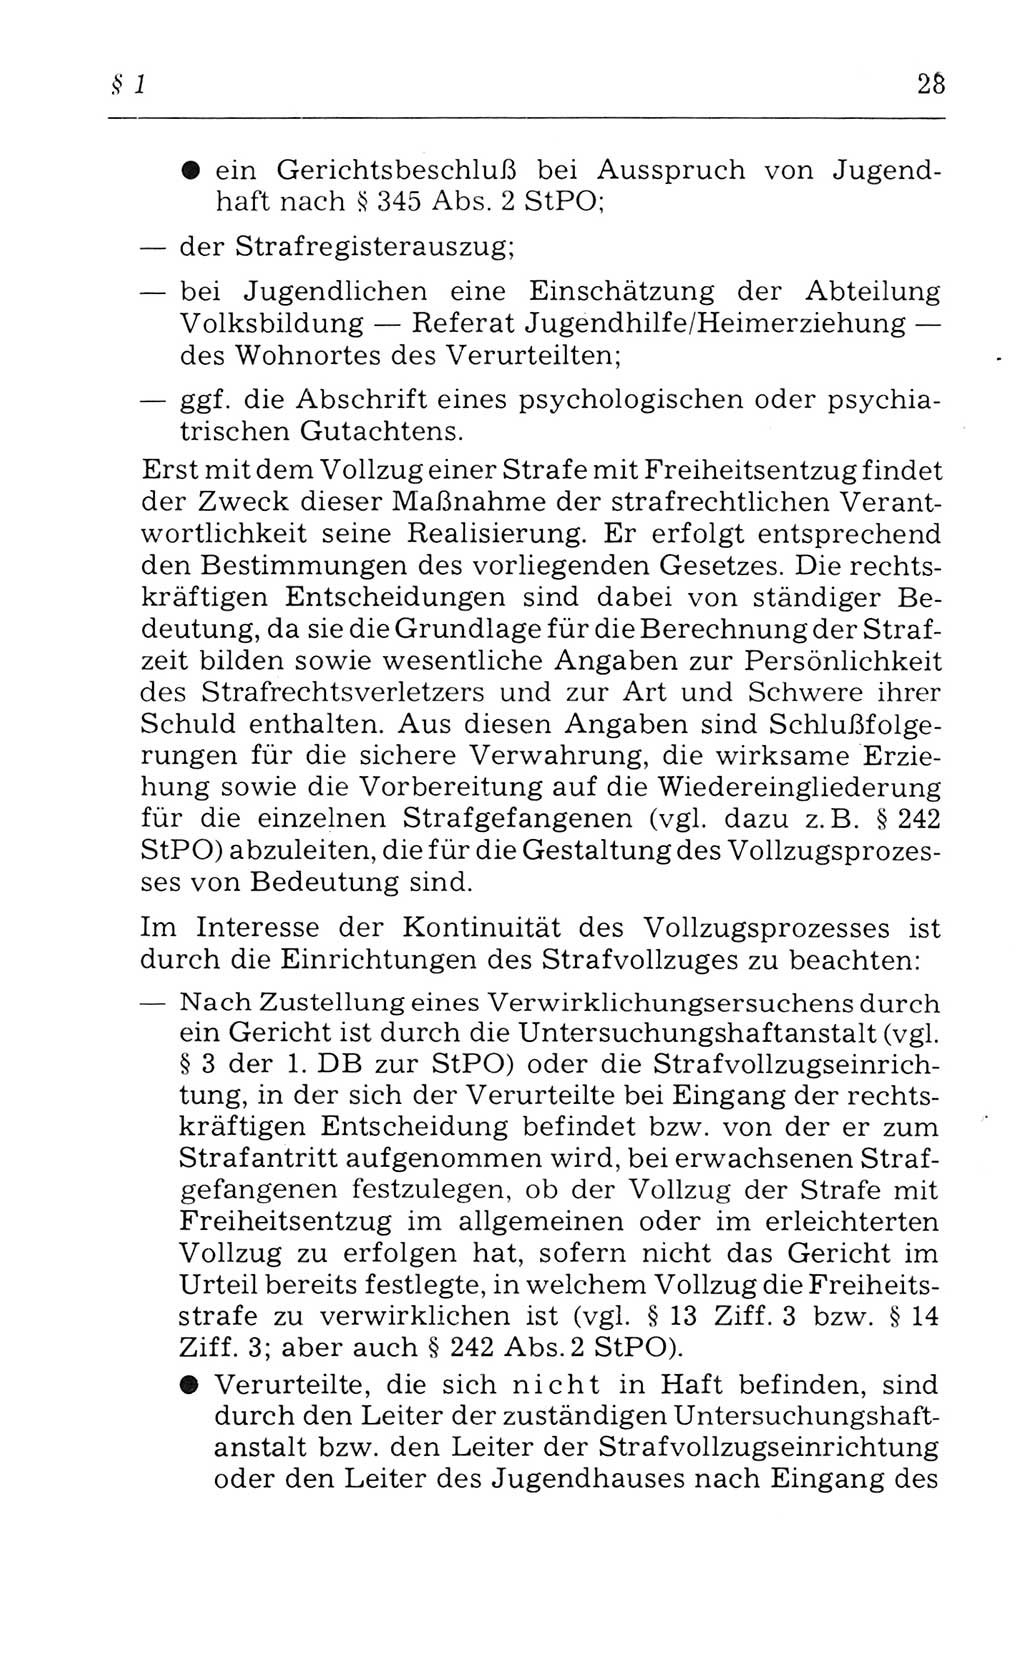 Kommentar zum Strafvollzugsgesetz [(StVG) Deutsche Demokratische Republik (DDR)] 1980, Seite 28 (Komm. StVG DDR 1980, S. 28)